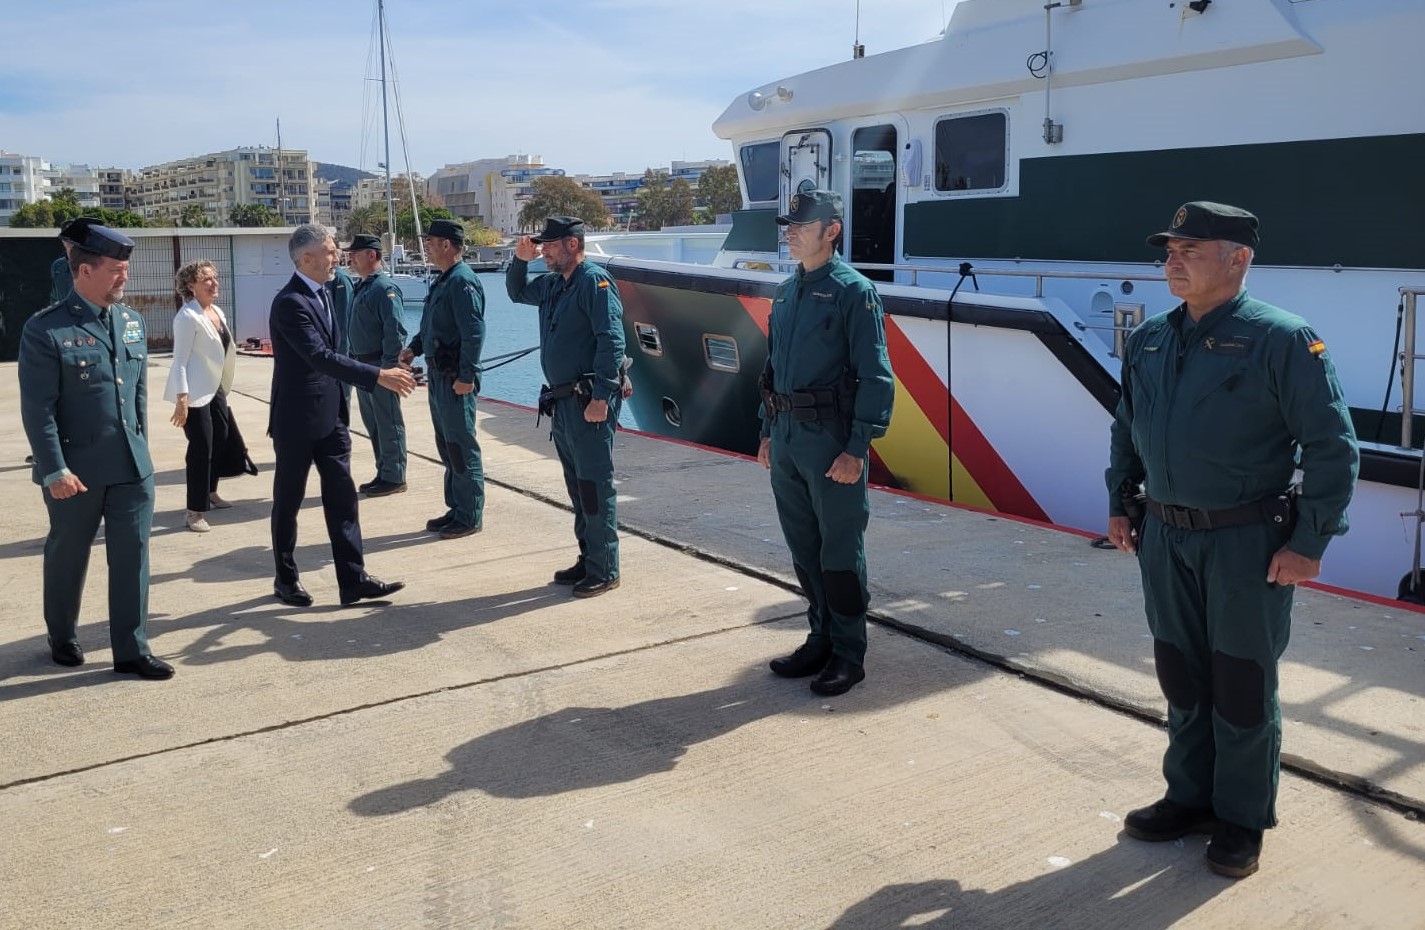 Grande-Marlaska se reúne en Mallorca e Eivissa con los máximos responsables de la Policía Nacional y la Guardia Civil en las islas